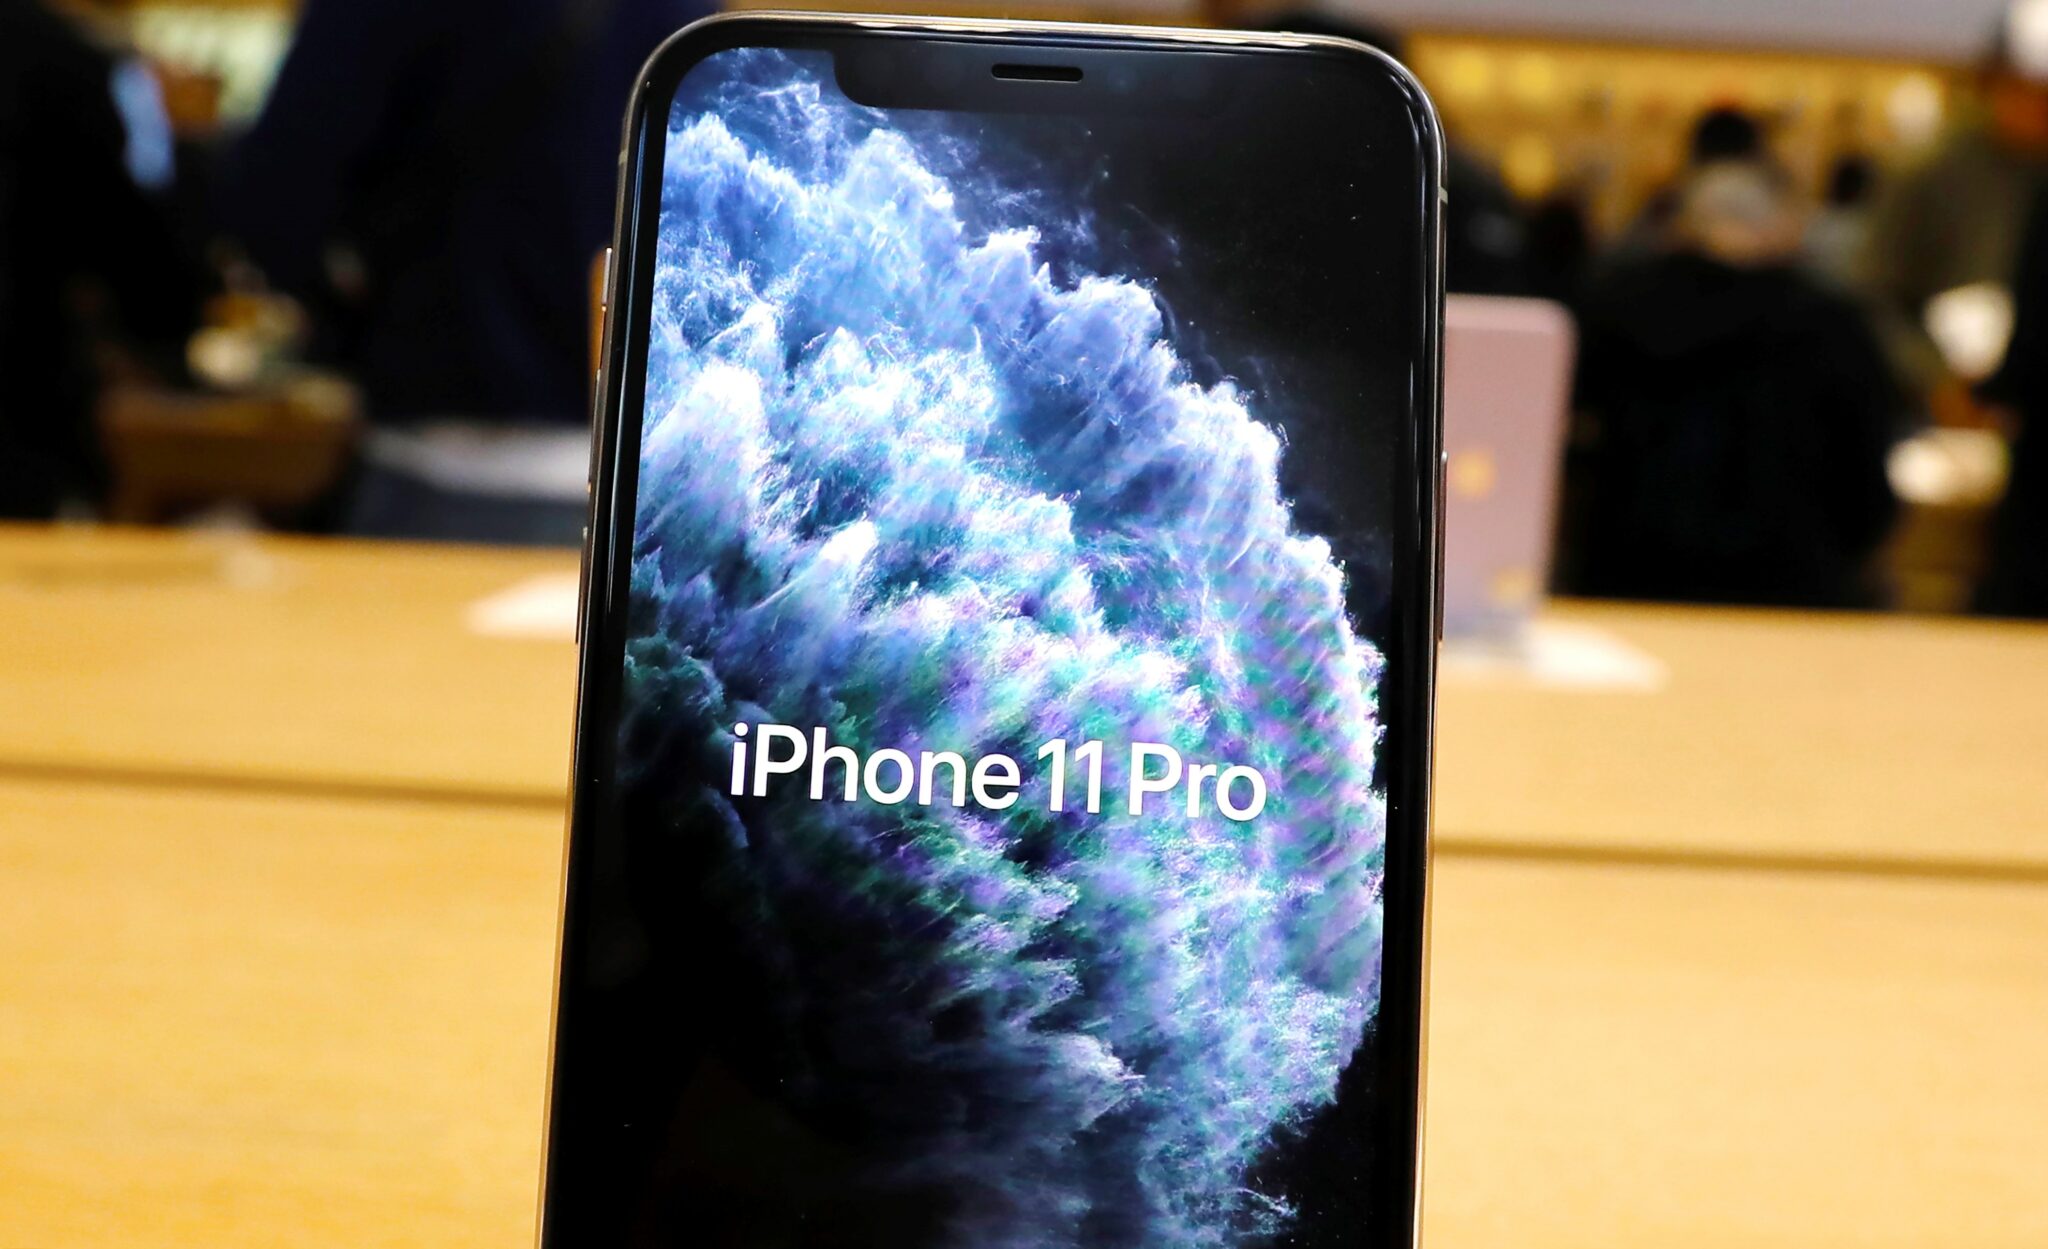 Apple multada por no incluir el cargador en el iPhone 12 sin